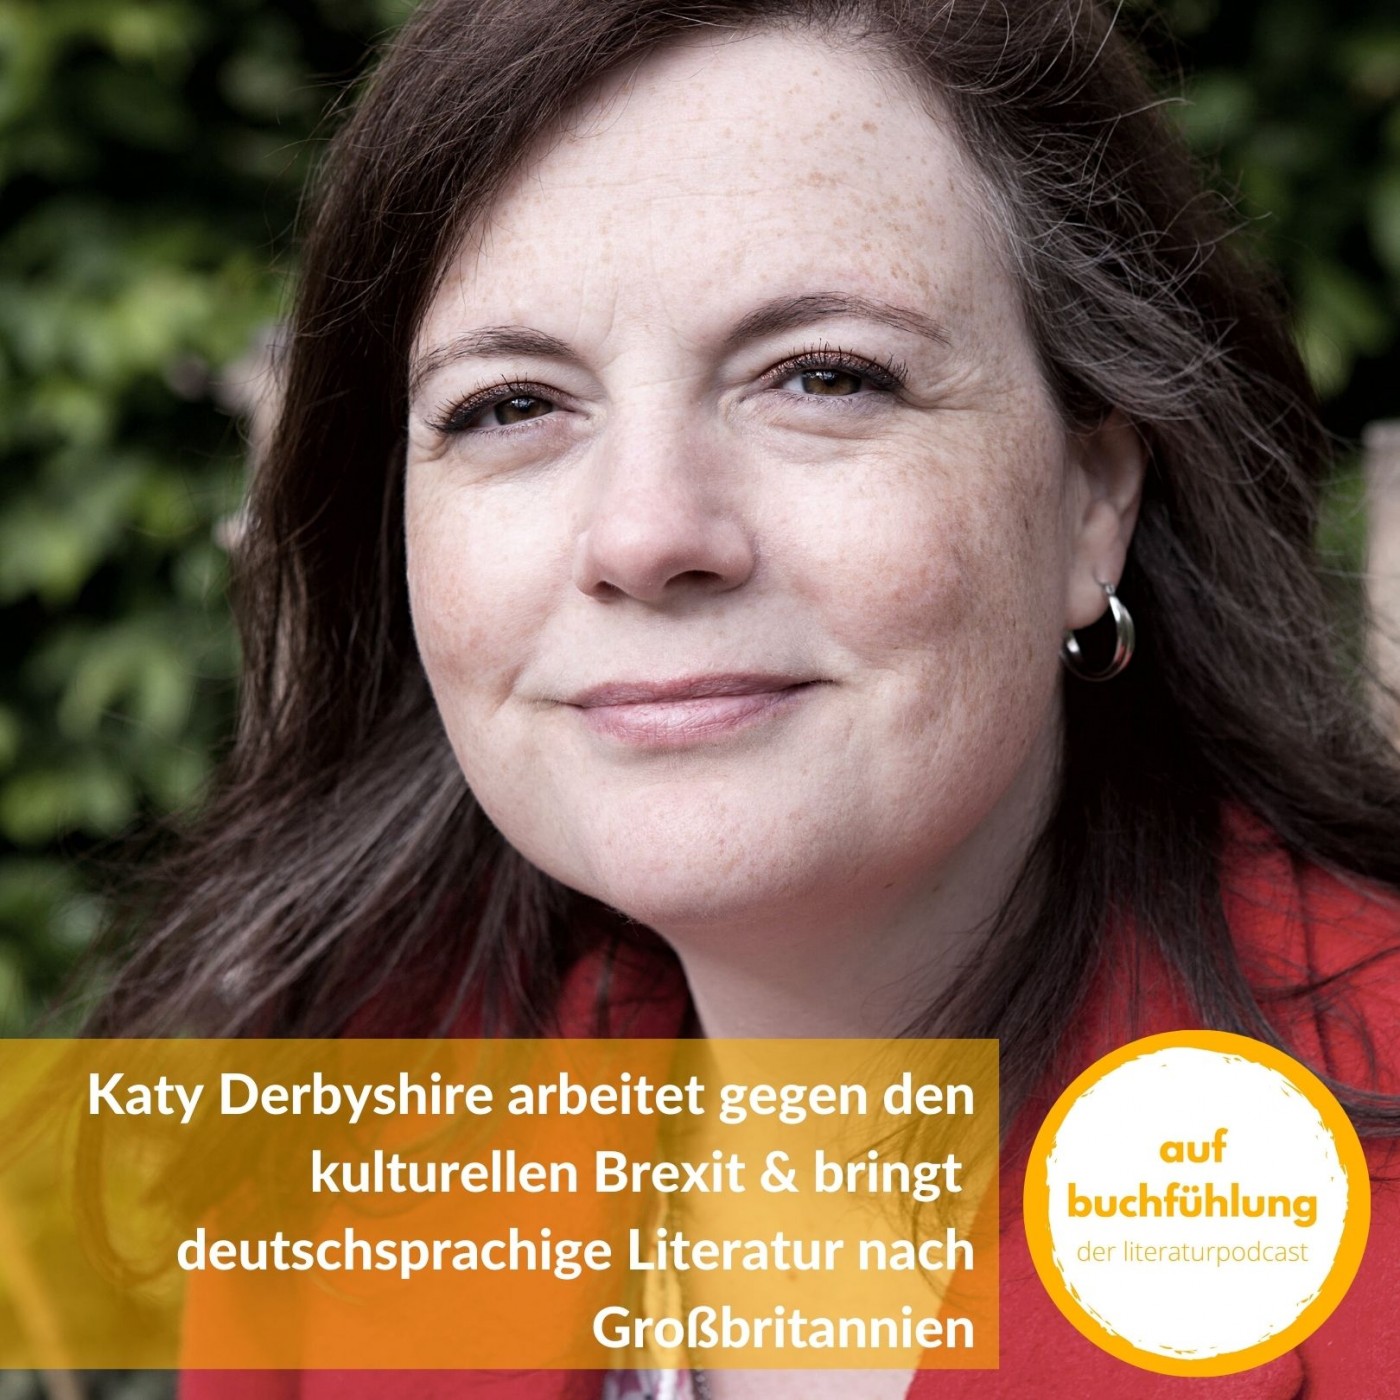 Katy Derbyshire arbeitet gegen den kulturellen Brexit & bringt deutschsprachige Literatur nach Großbritannien